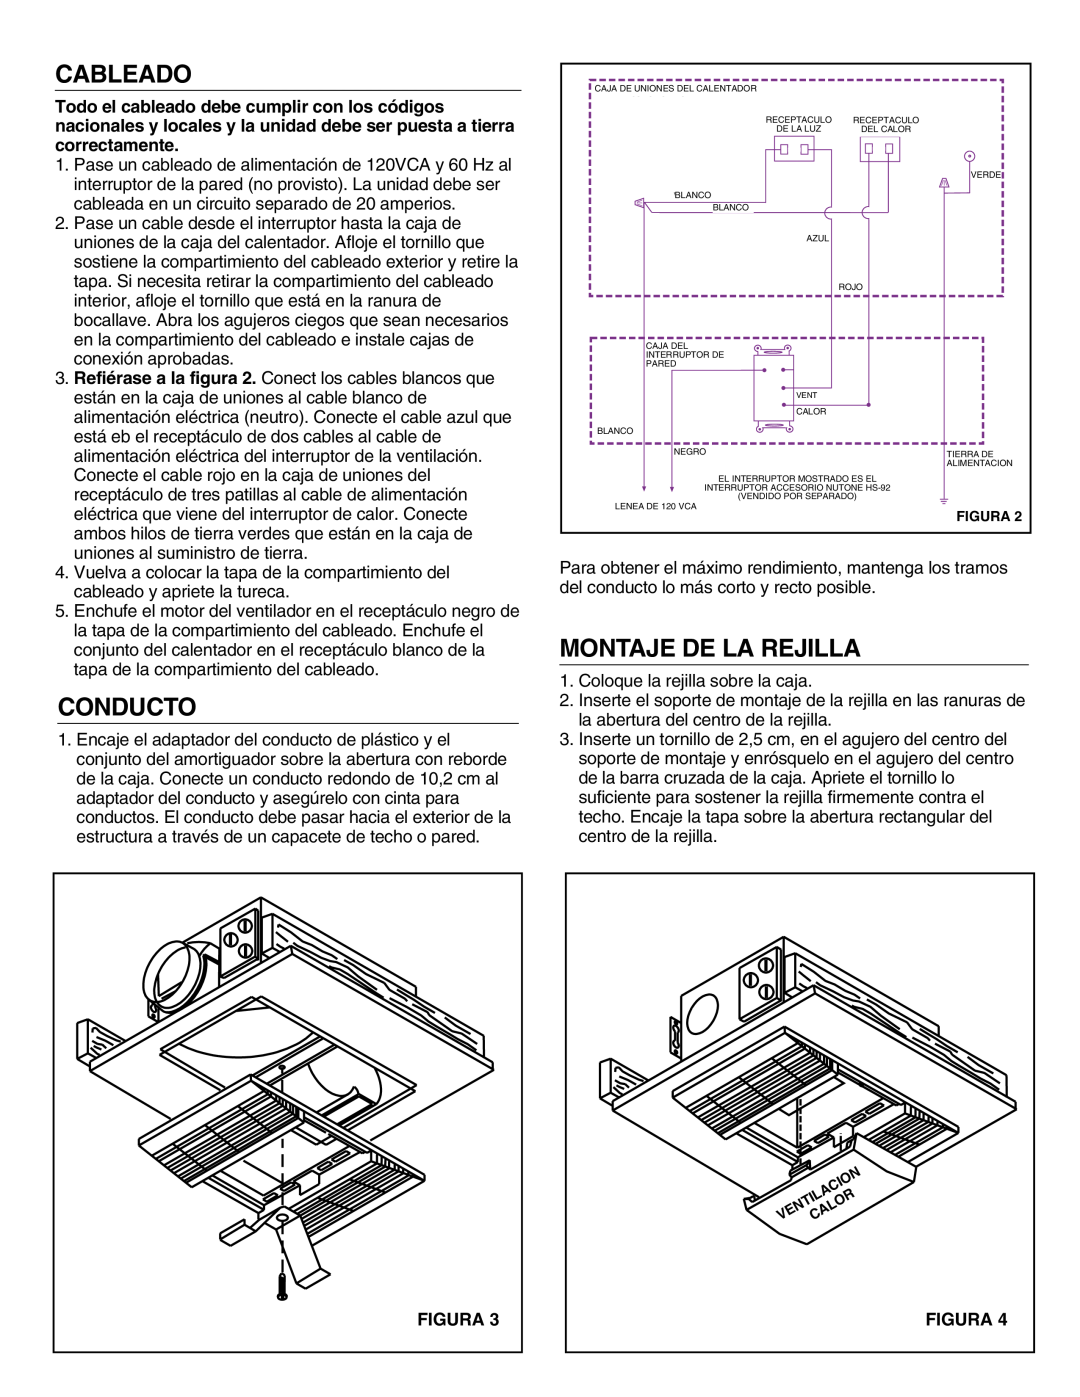 NuTone 605RP installation instructions Cableado, Conducto, Montaje De La Rejilla, Figura 